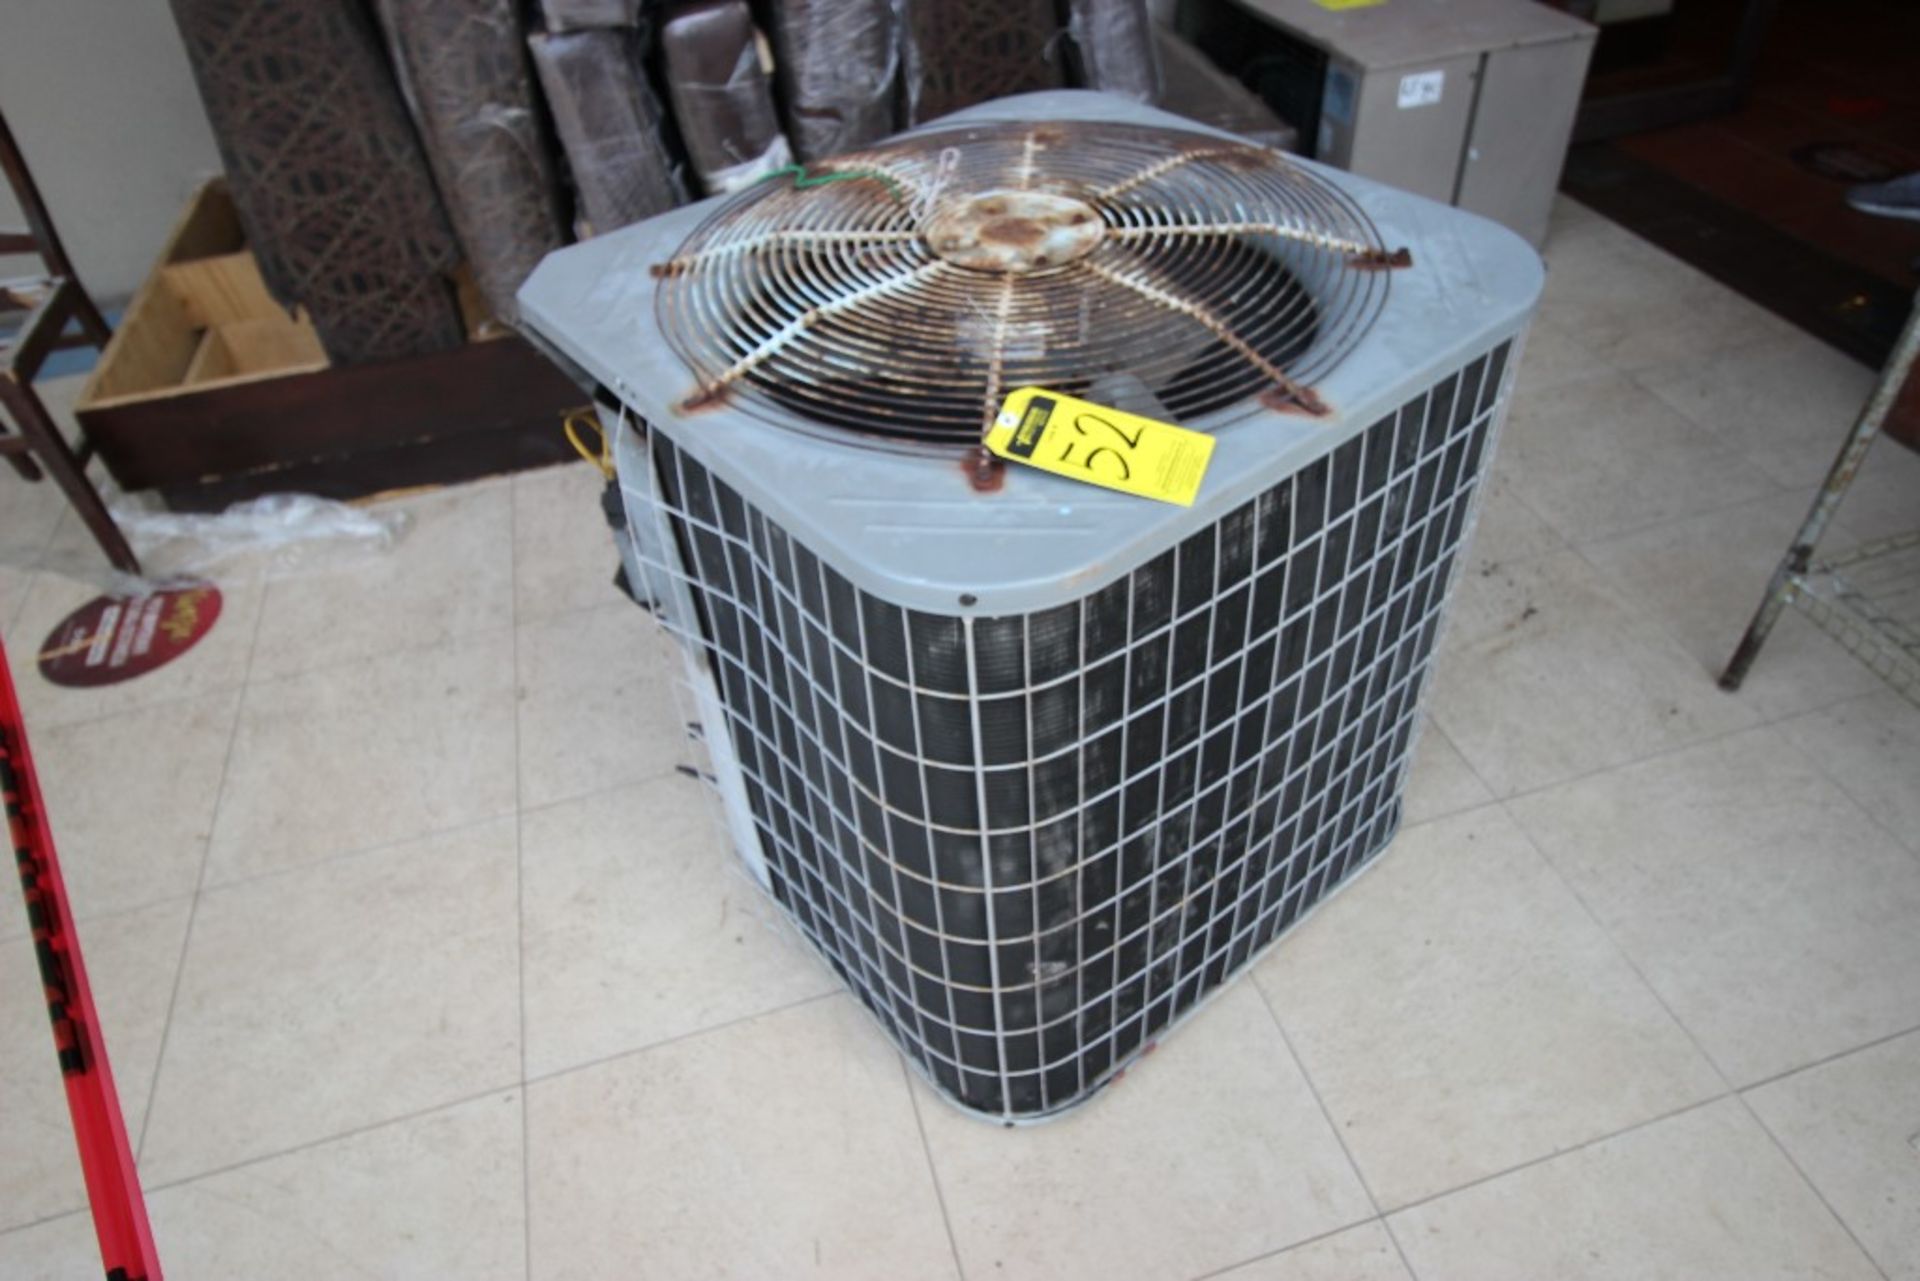 3 Unidades Condensadoras para aire acondicionado de un ventilador marca York, modelo:YCJD36S41S1A, - Image 3 of 19